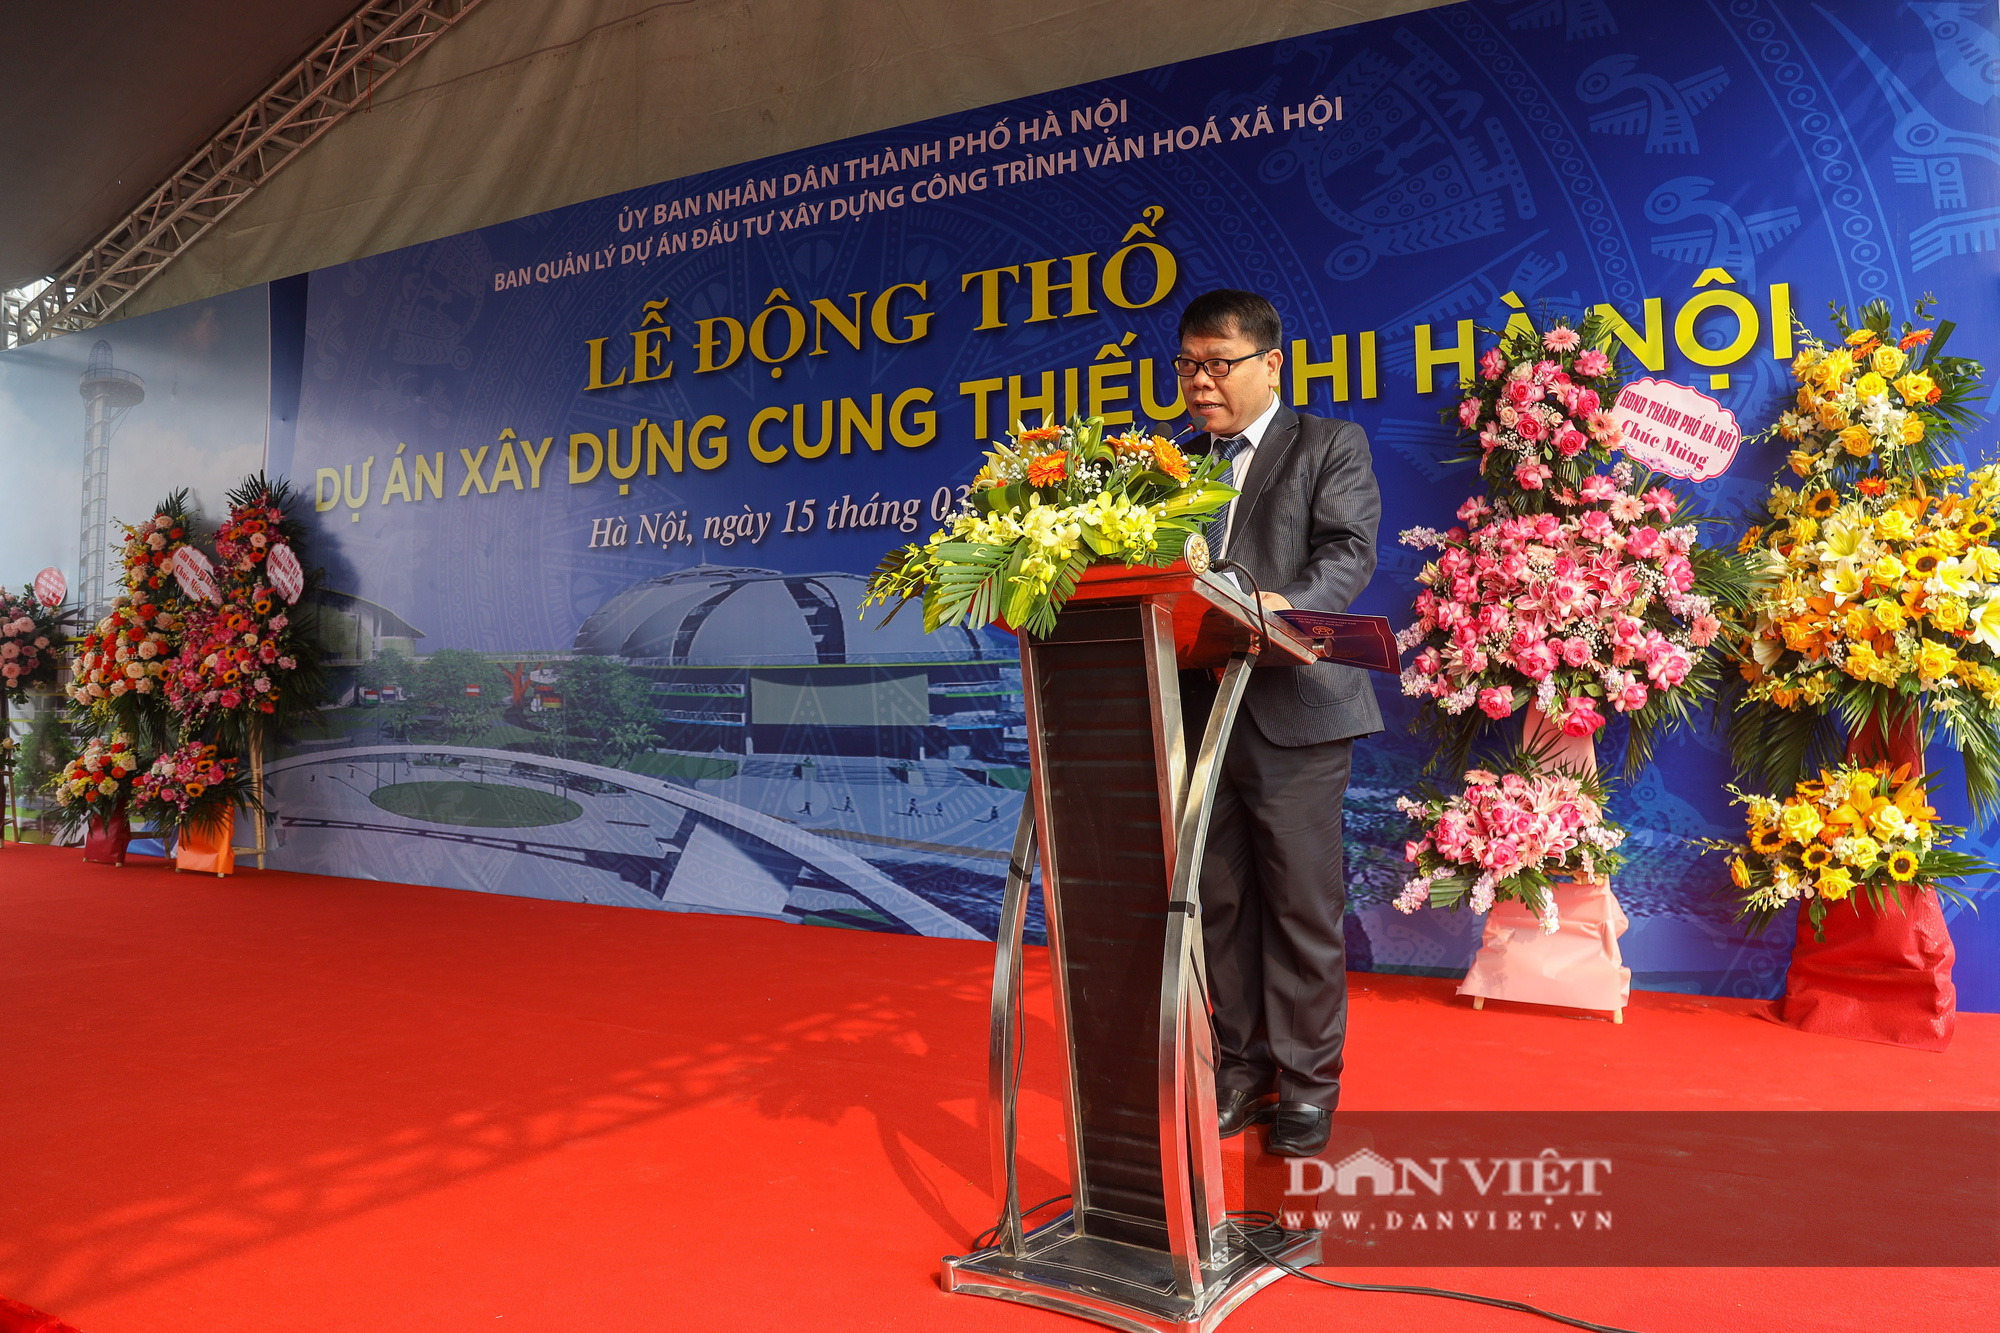 Hà Nội: Động thổ dự án Cung thiếu nhi mới hơn 1.300 tỷ đồng - Ảnh 3.